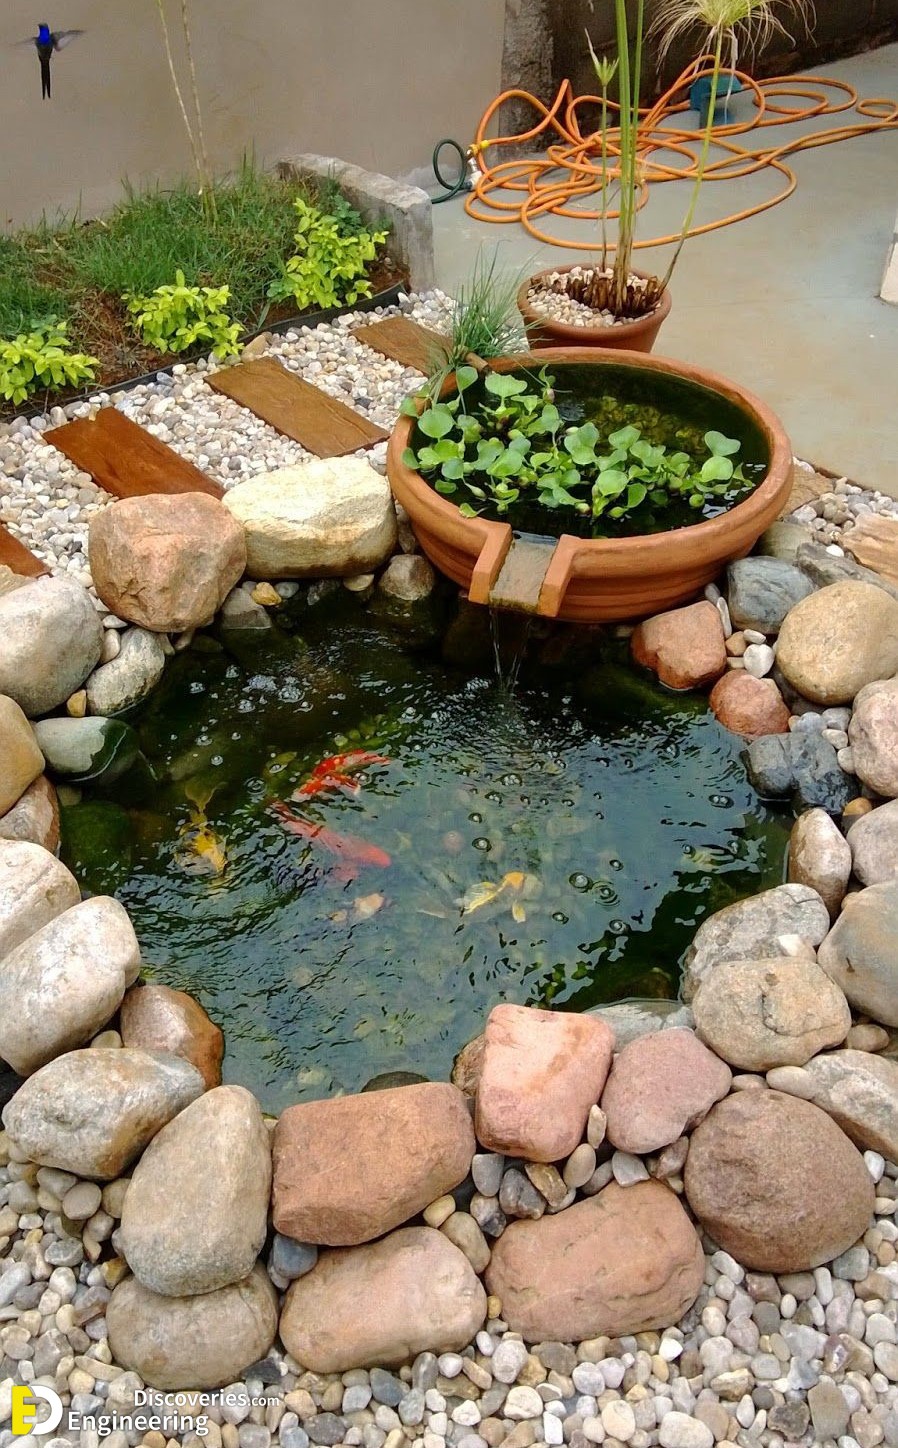 32 Small Pond Design Ideas For Gardens